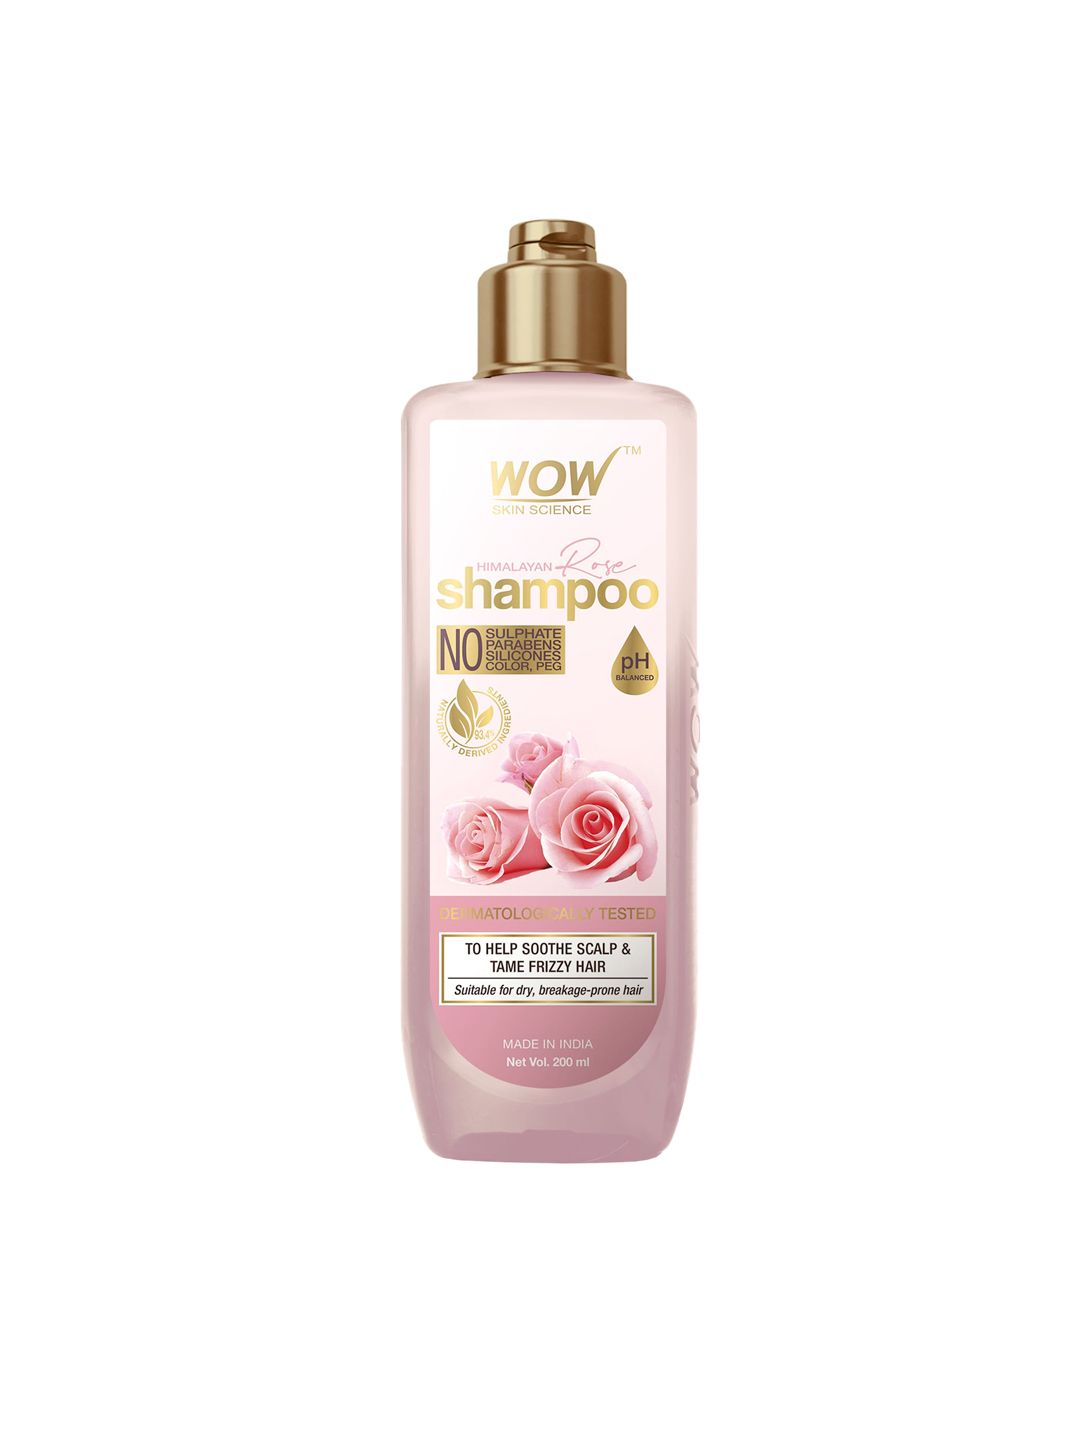 WOW SKIN SCIENCE Himalayan Rose Shampoo - 200 ml Price in India